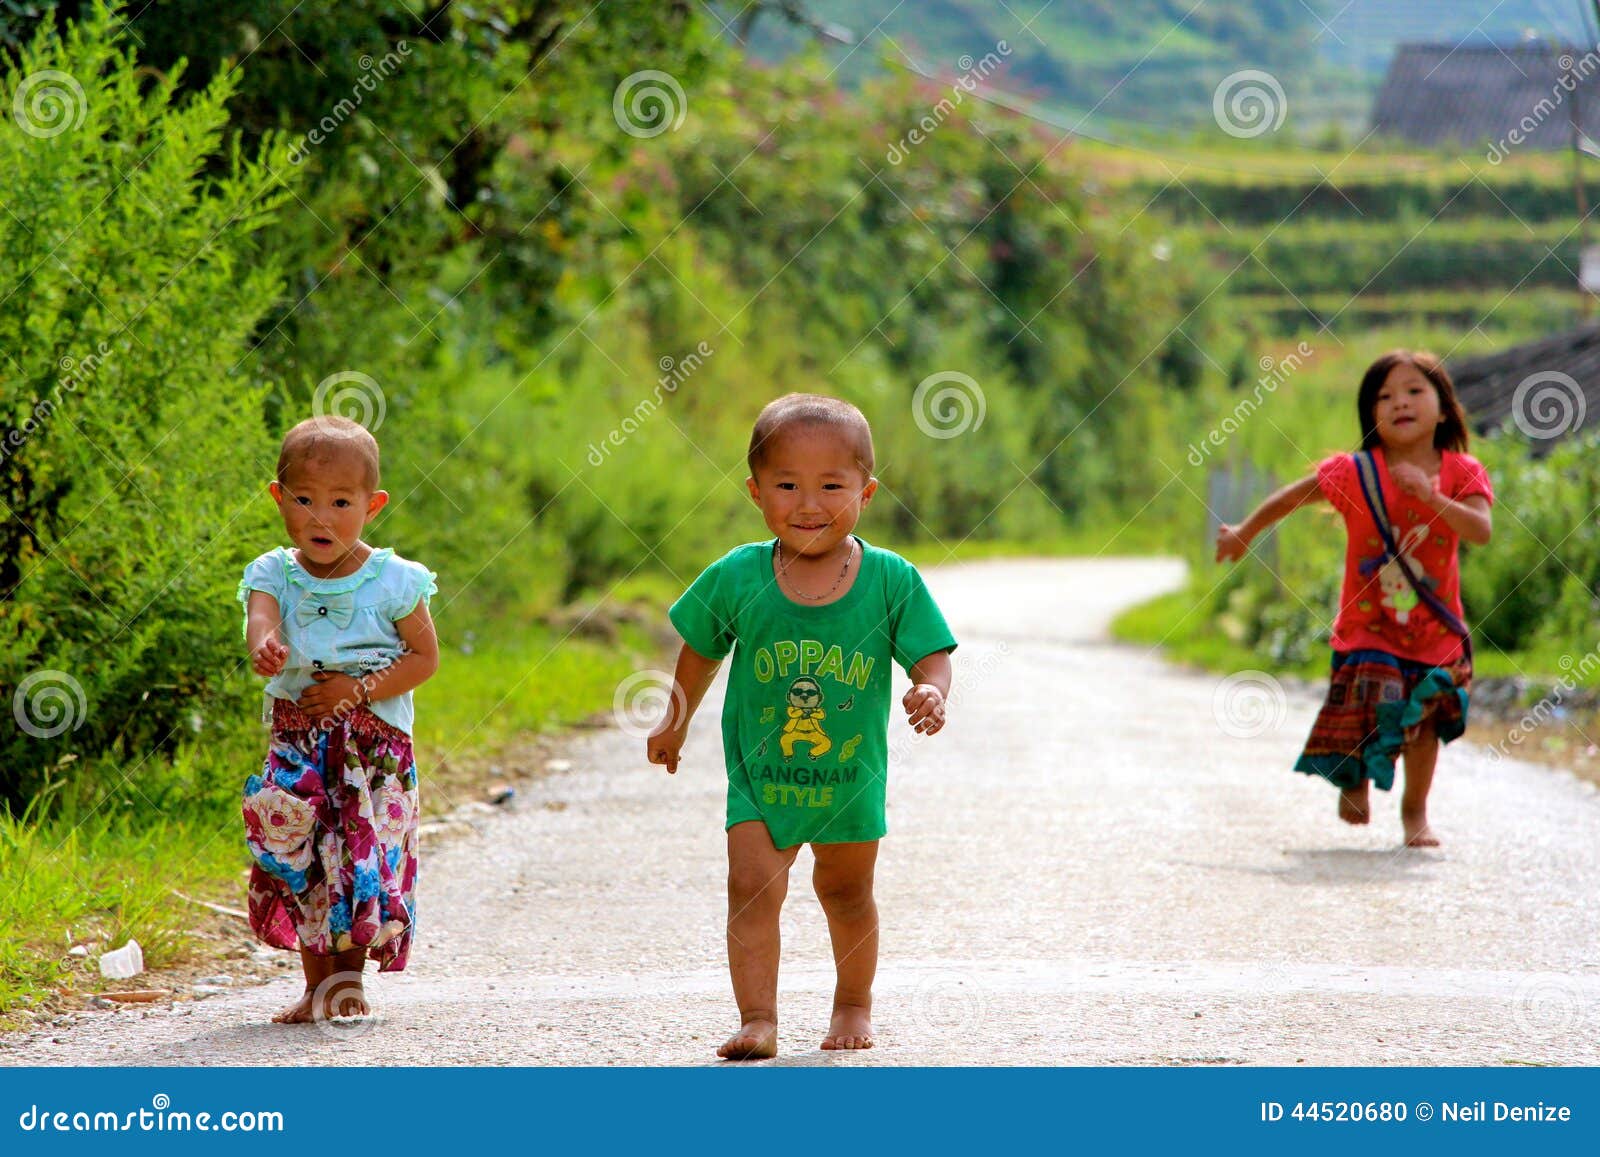 图片素材 : 人, 山, 玩, 儿童, 家庭, 孩子们, 幼儿园, 越南, 农村, 莱州 4000x3000 - - 590772 - 素材中国, 高清壁纸 - PxHere摄影图库